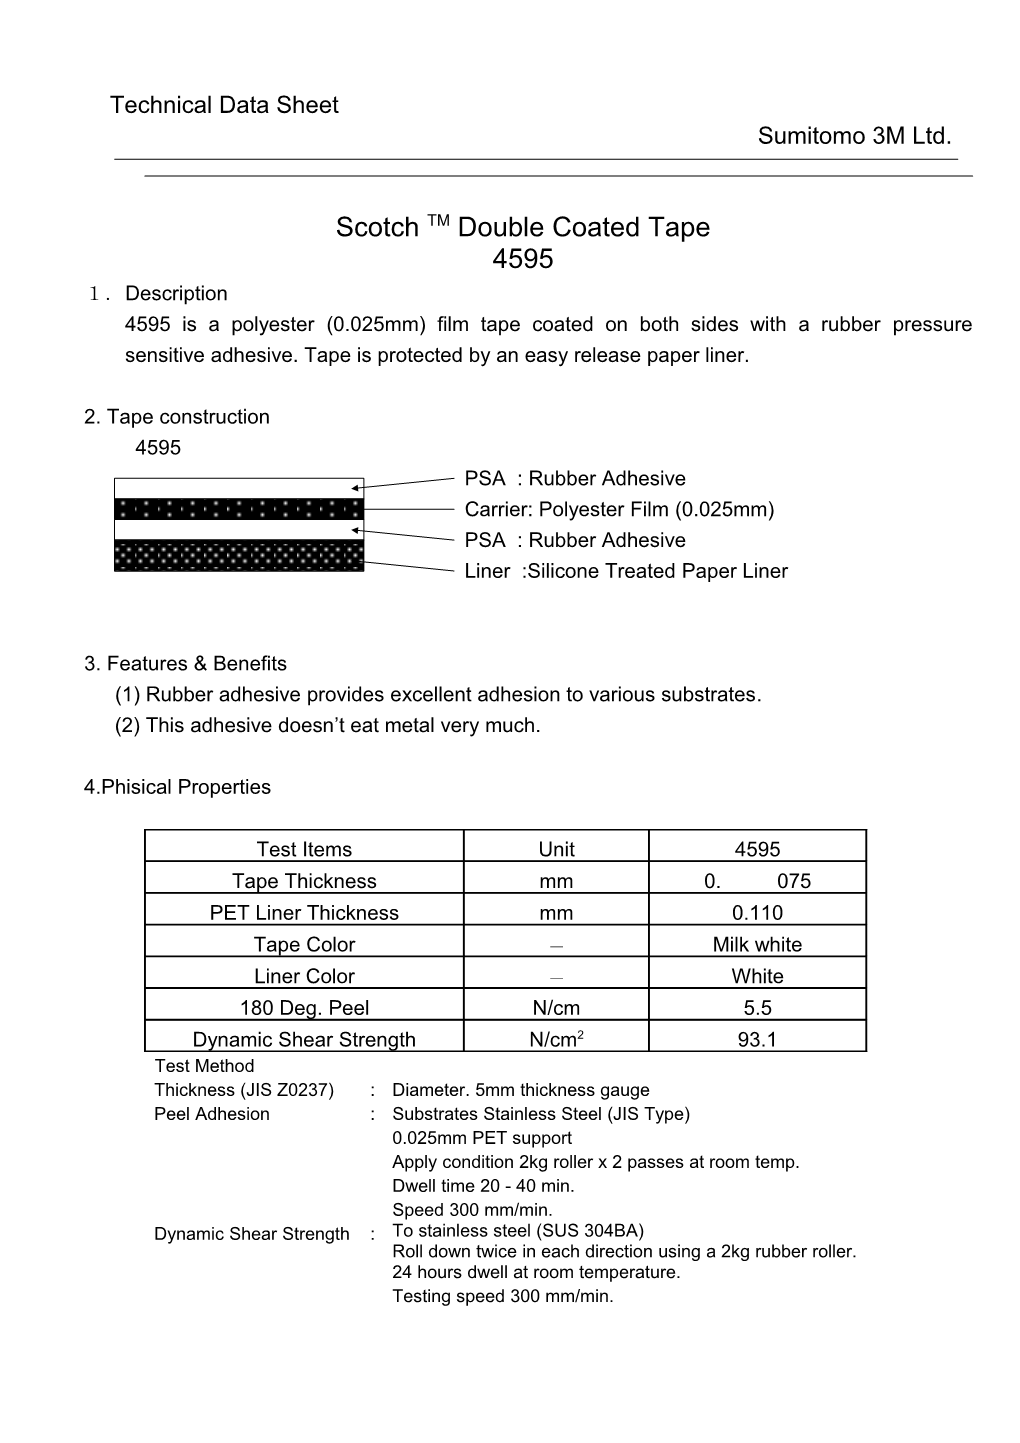 Technical Data Sheet s3